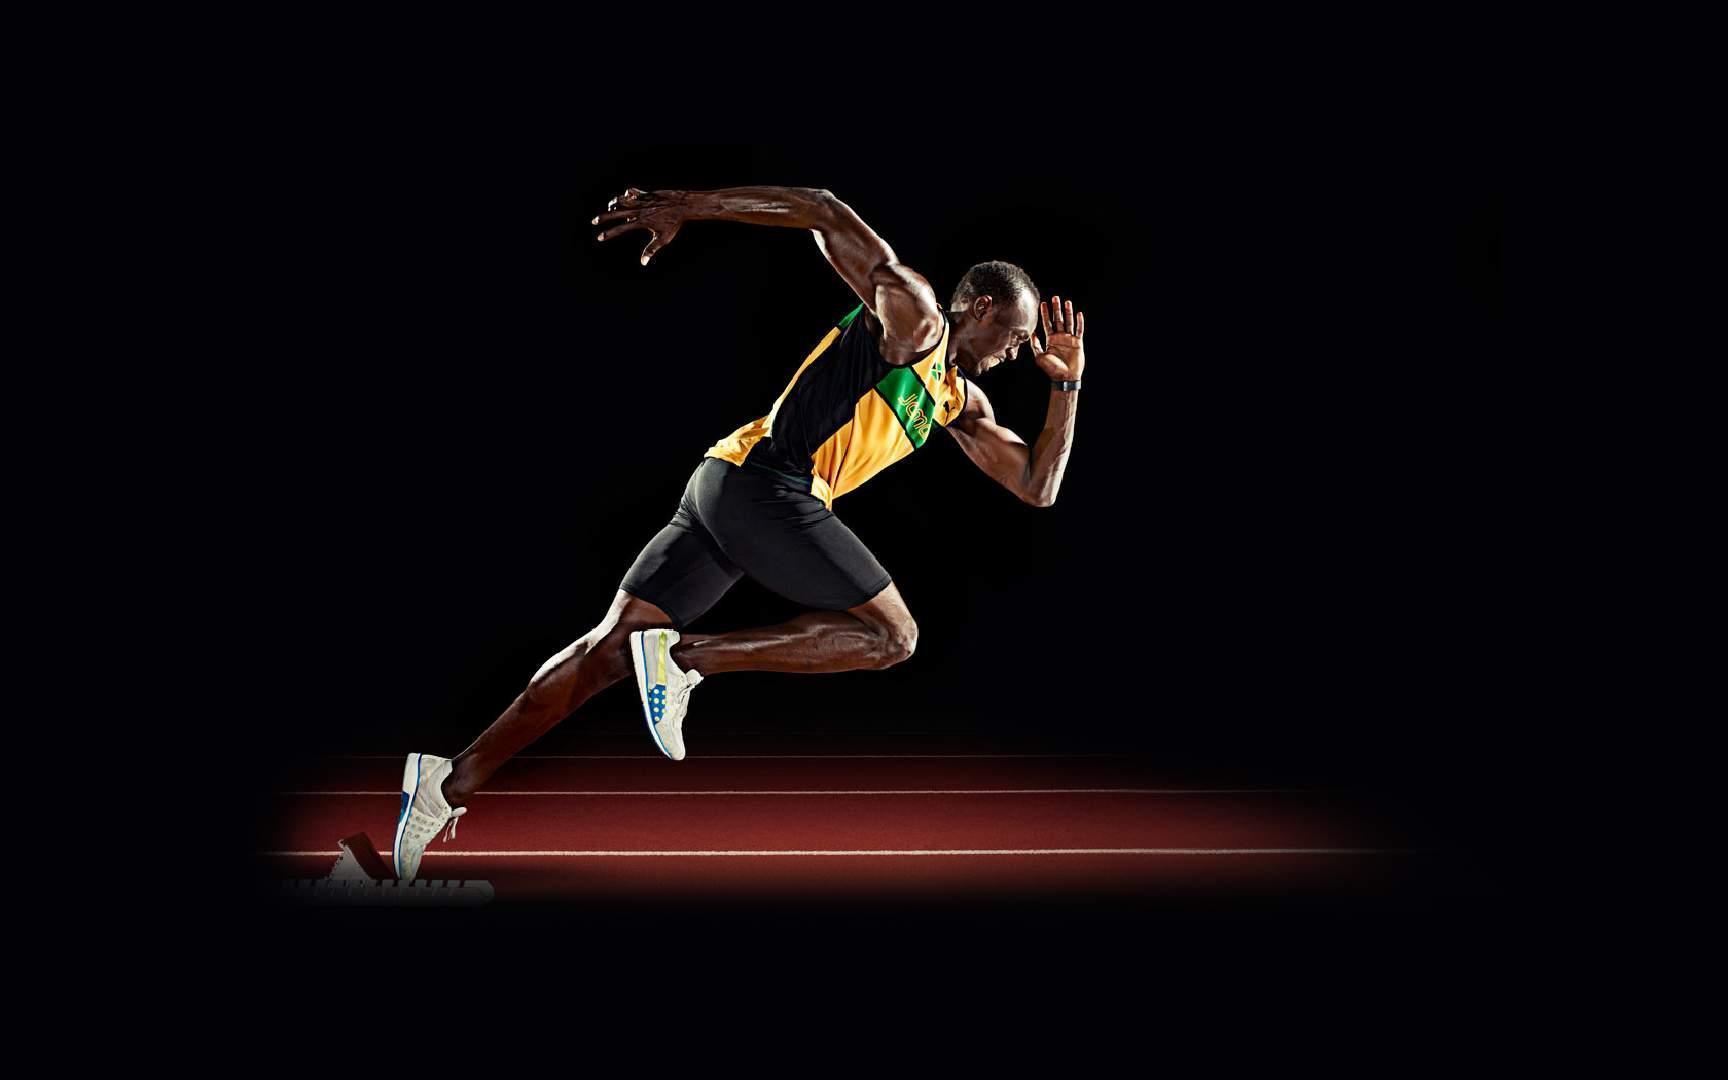 Fantesty usain Bolt free desktop background wallpaper image